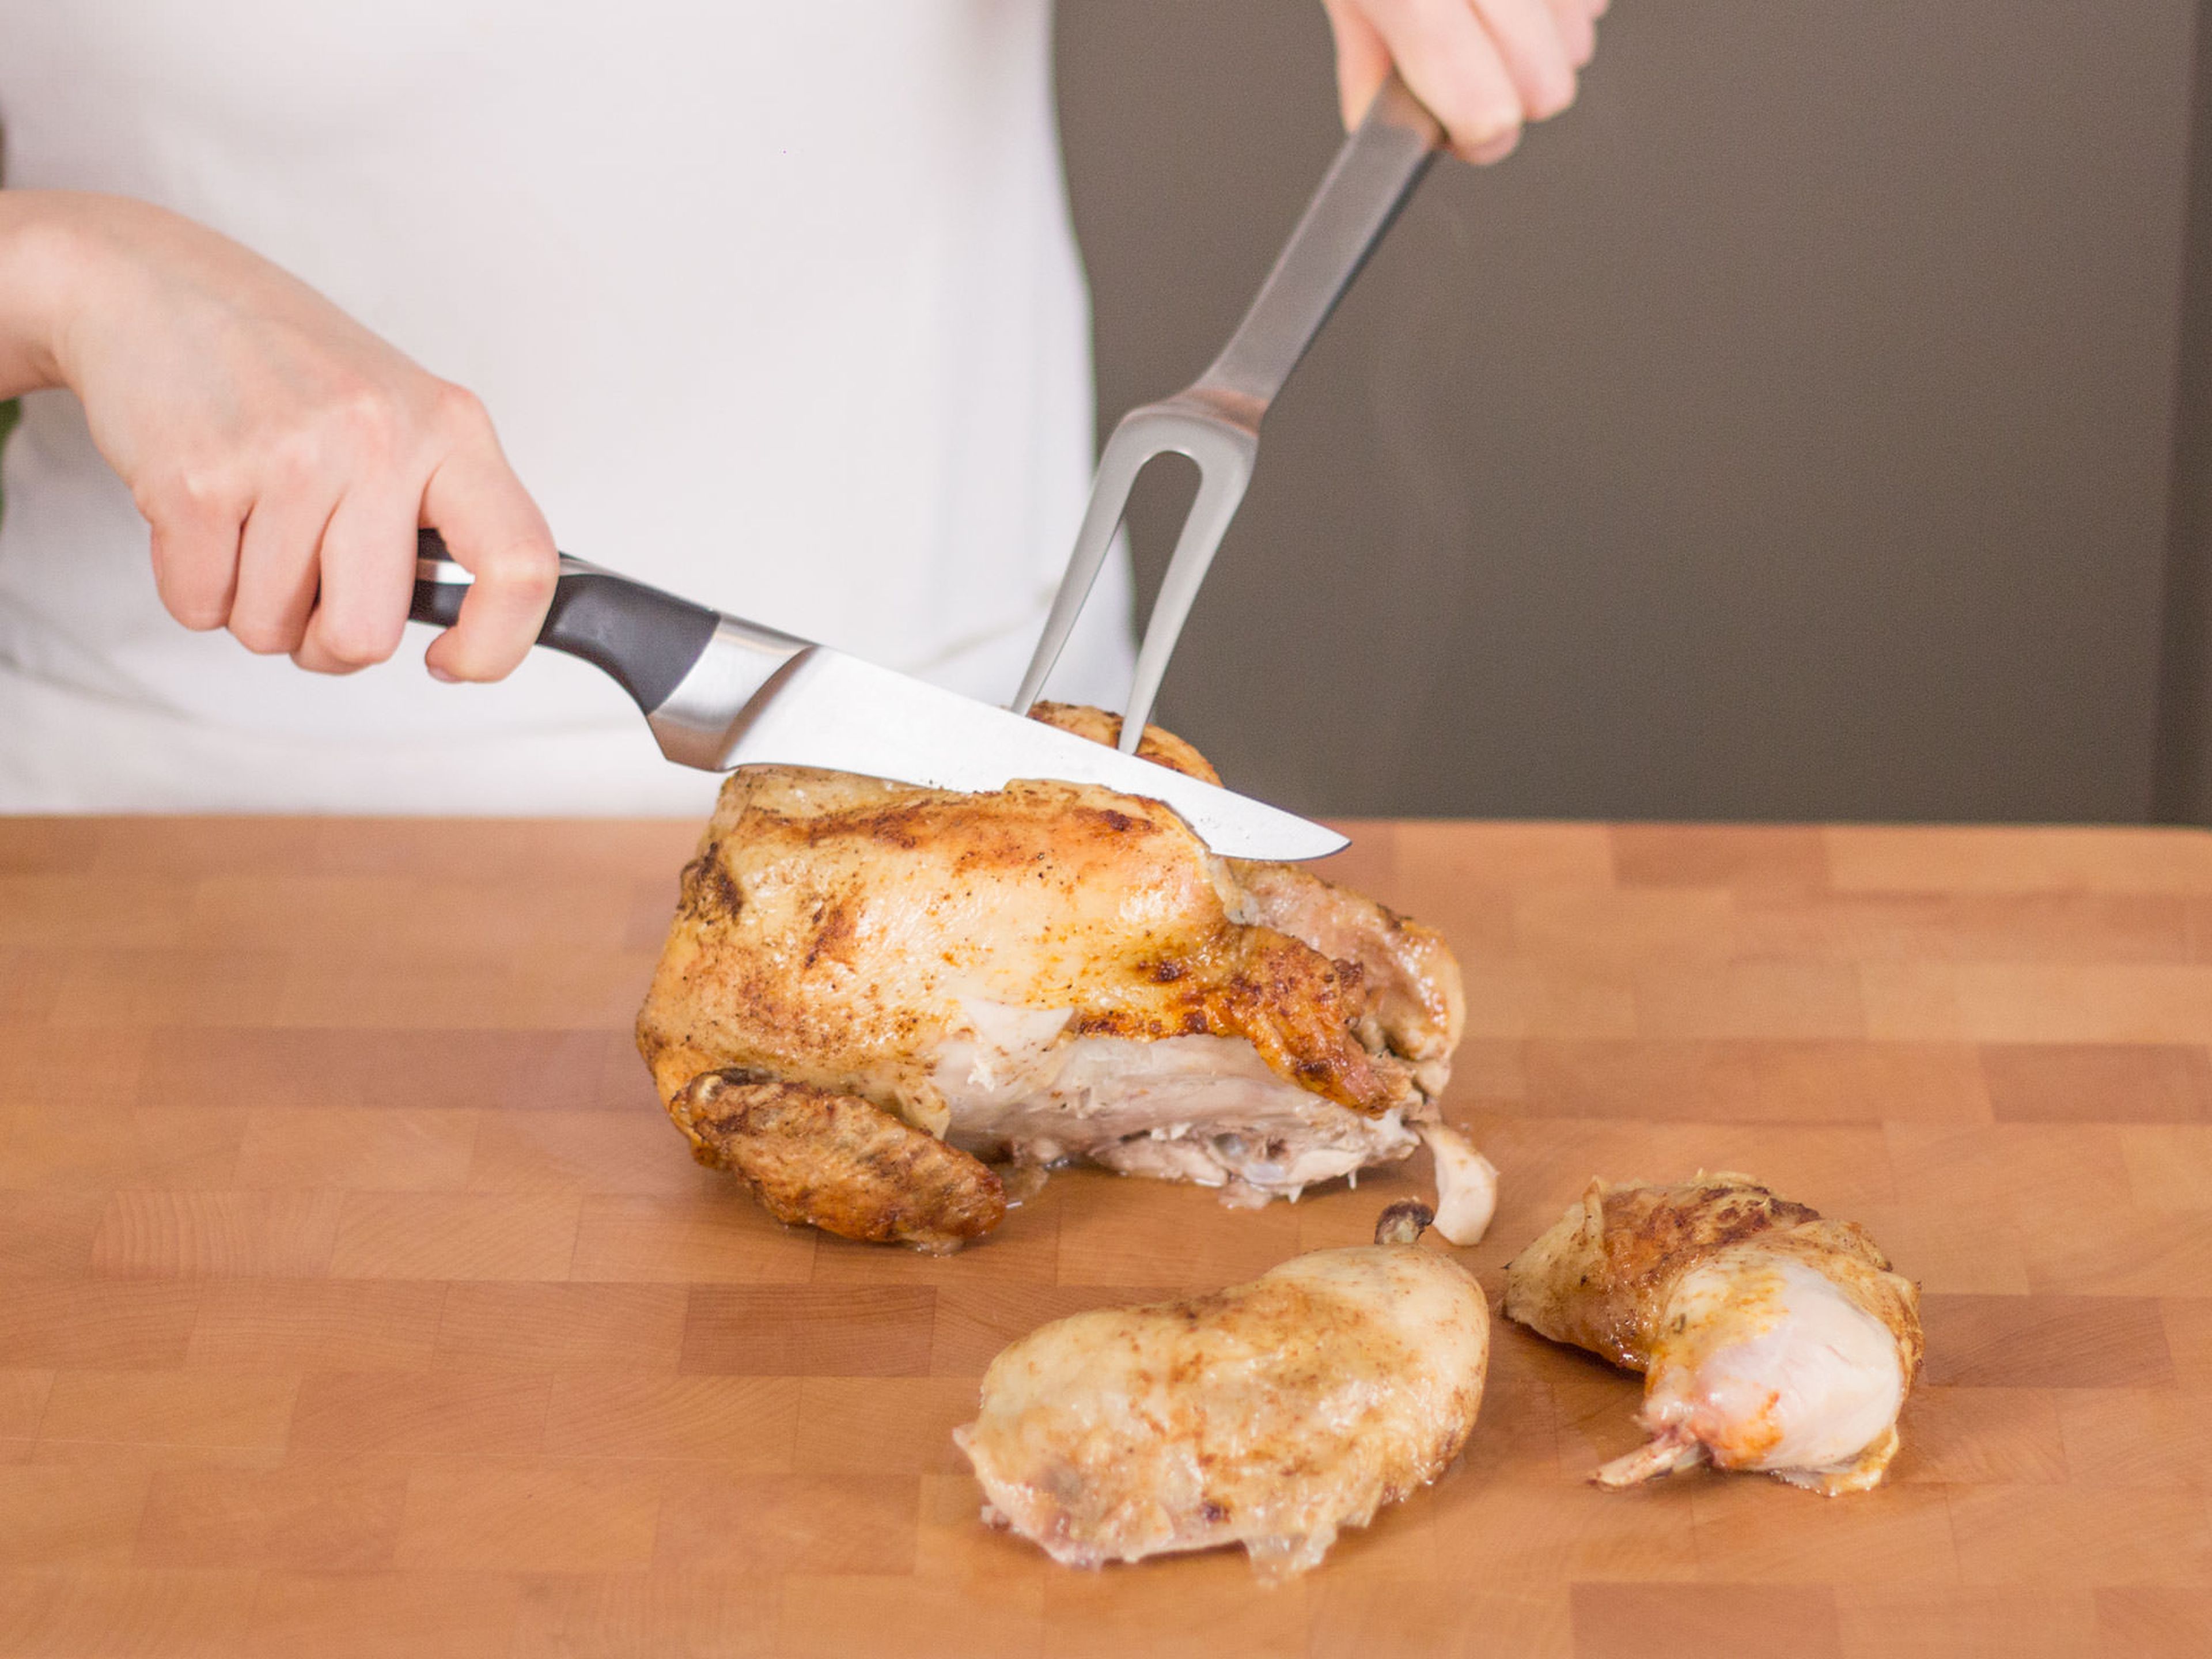 Hühnchen aus dem Backofen nehmen und ca. 5 – 10 Min. abkühlen lassen. Anschließend Huhn nach Wunsch portionieren.